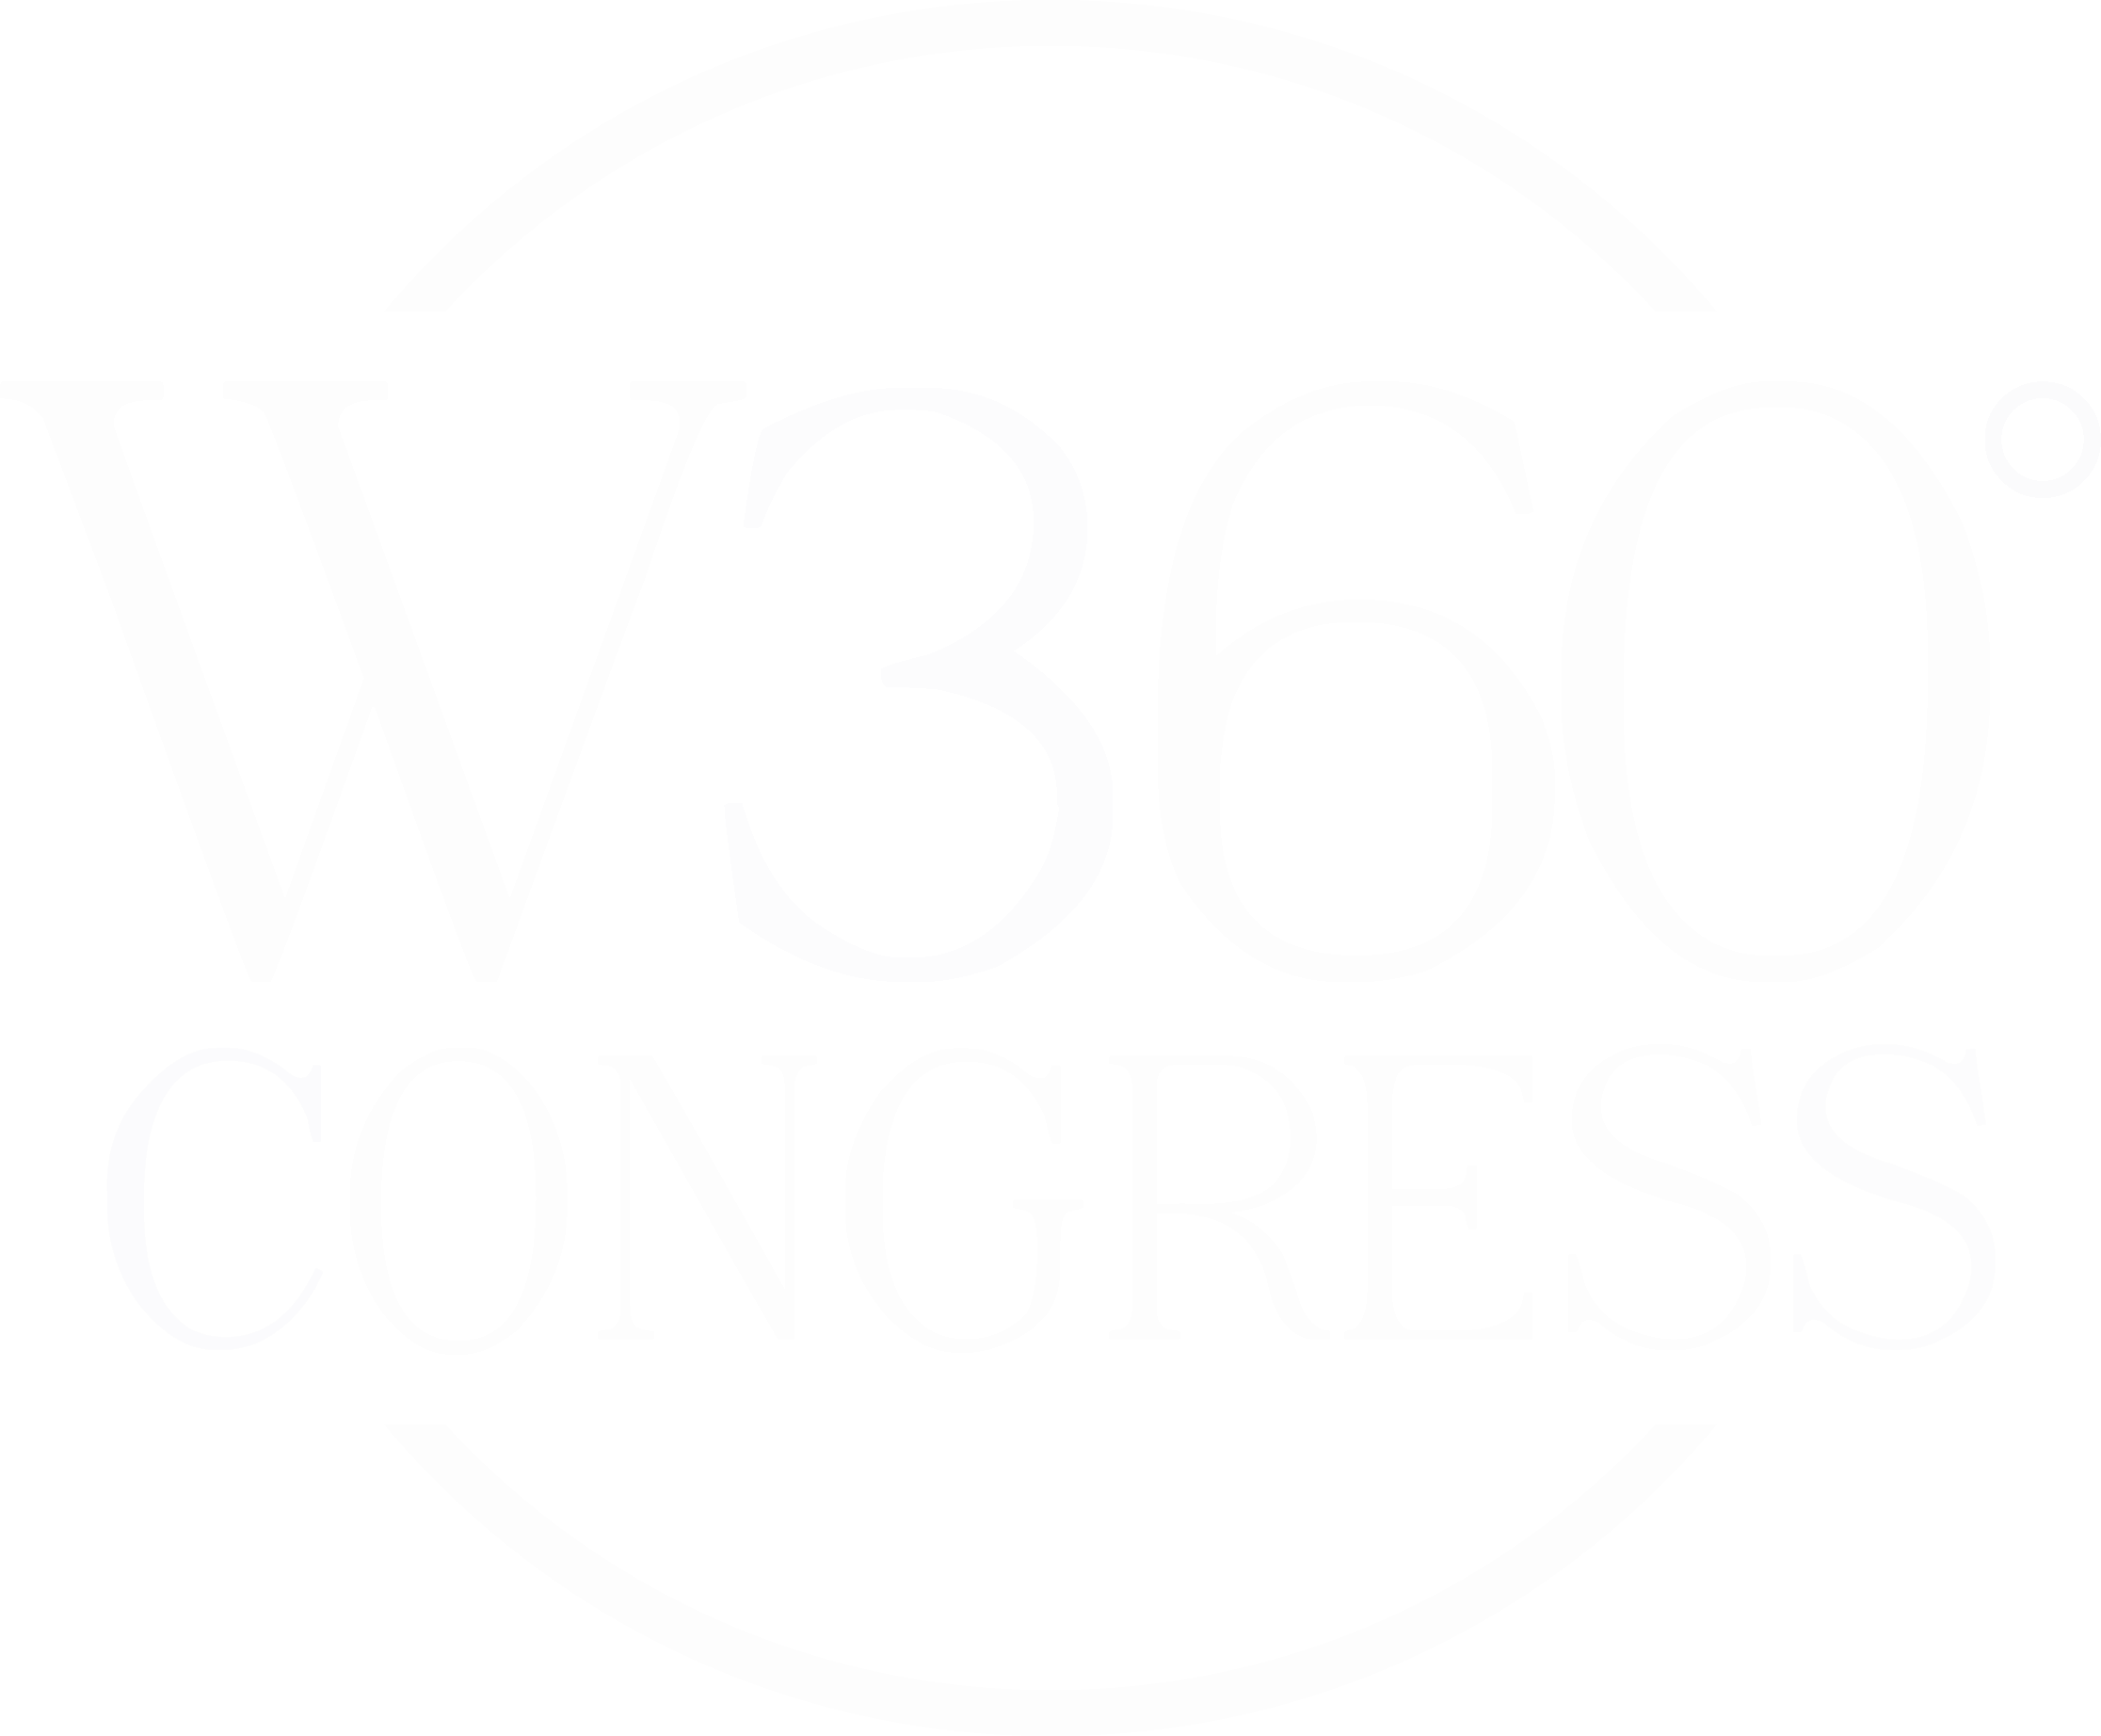 Women 360º Congress